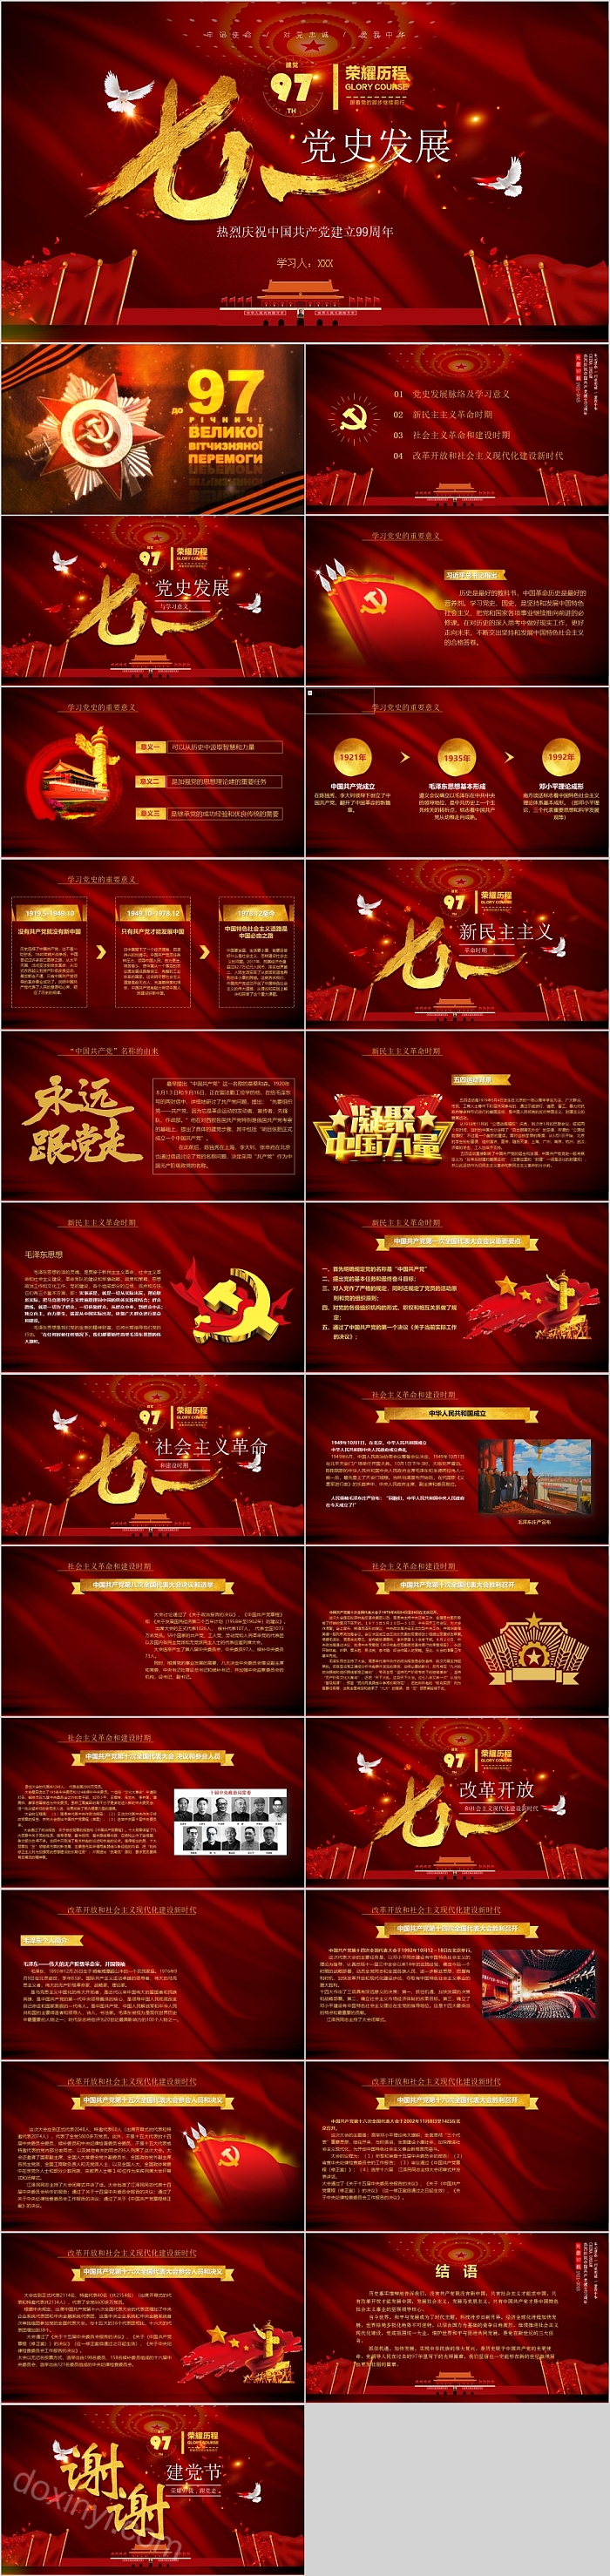 七一建党节热烈庆祝中国共产党建立99周年